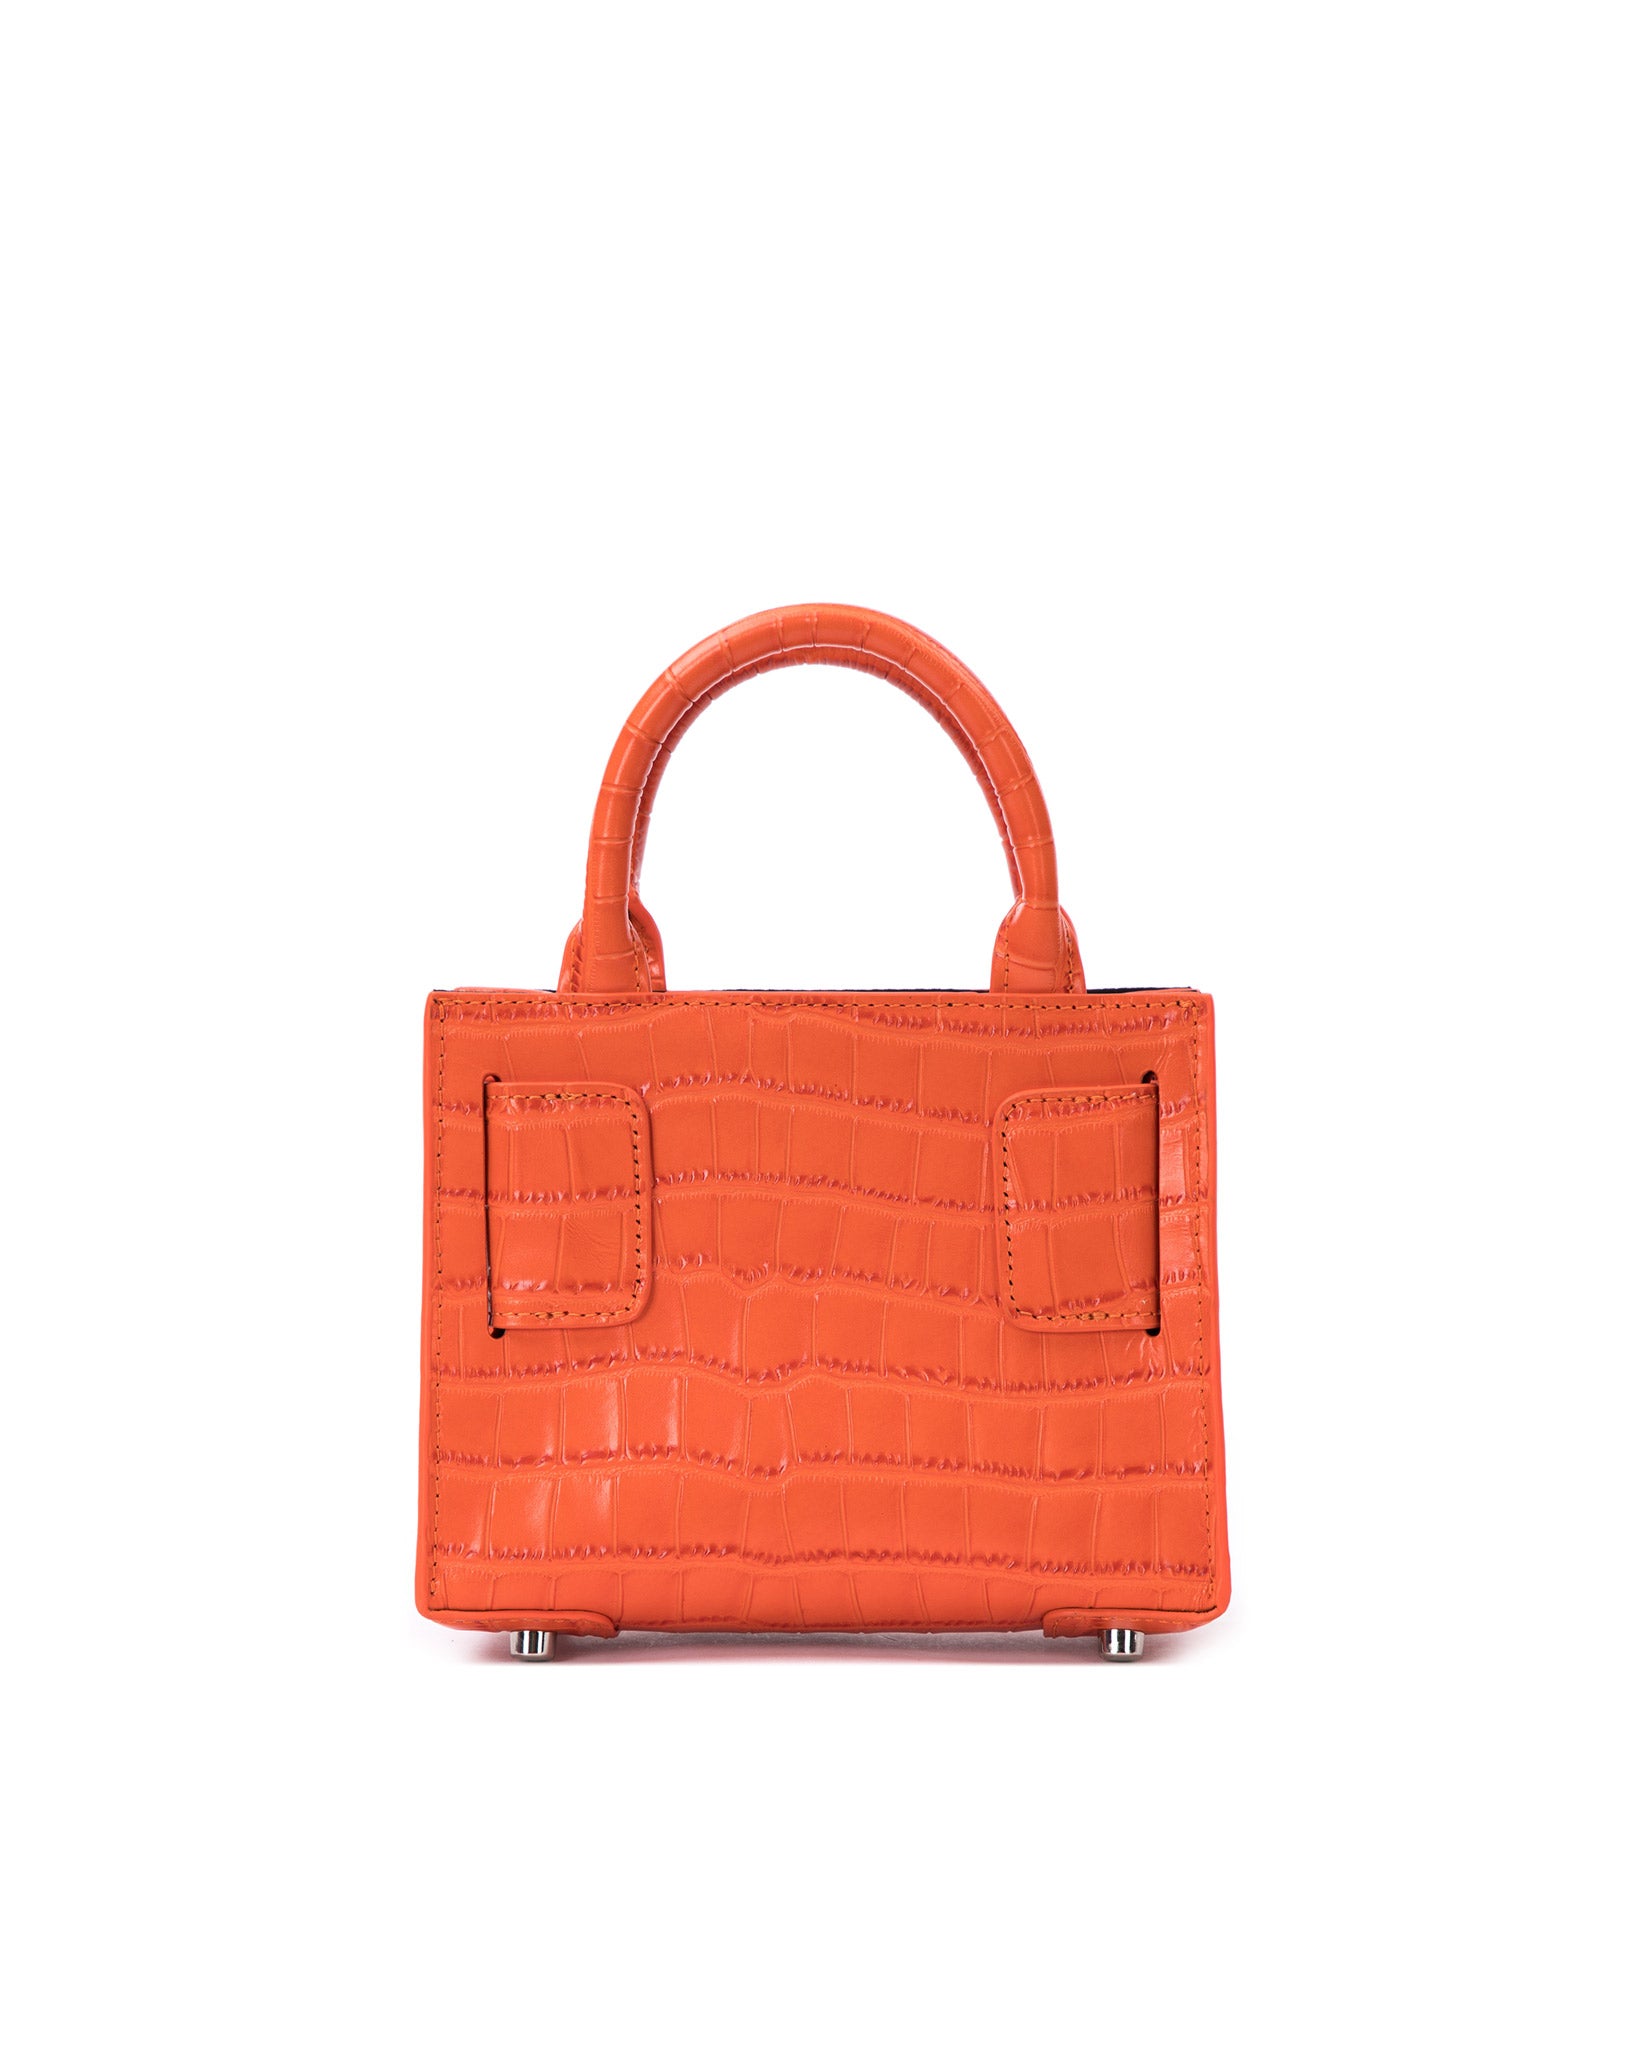 Brandon Blackwood New York - Kuei Bag - Orange Croc Embossed Leather